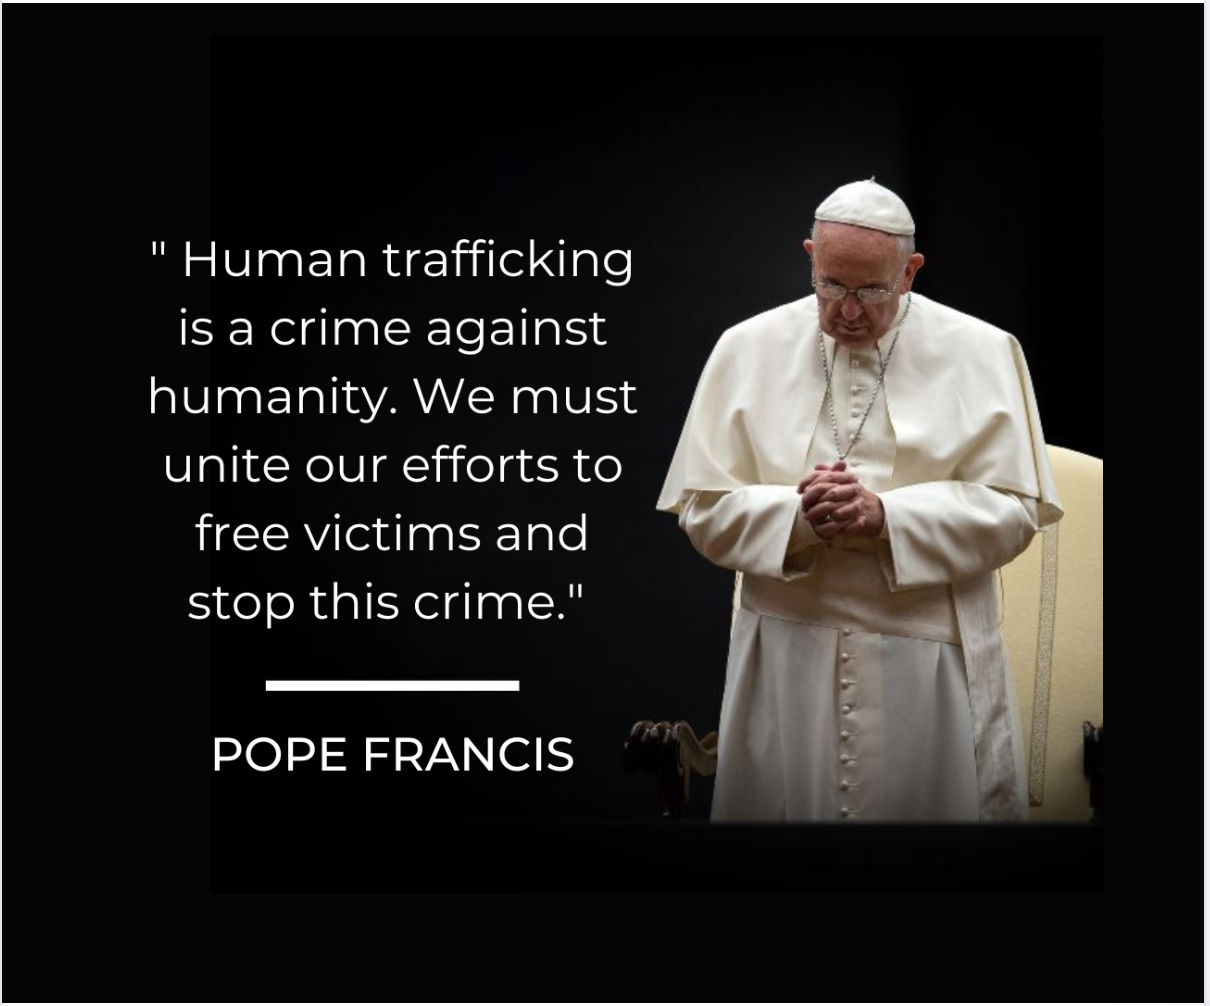 Citação do Papa Francisco sobre o tráfico humano